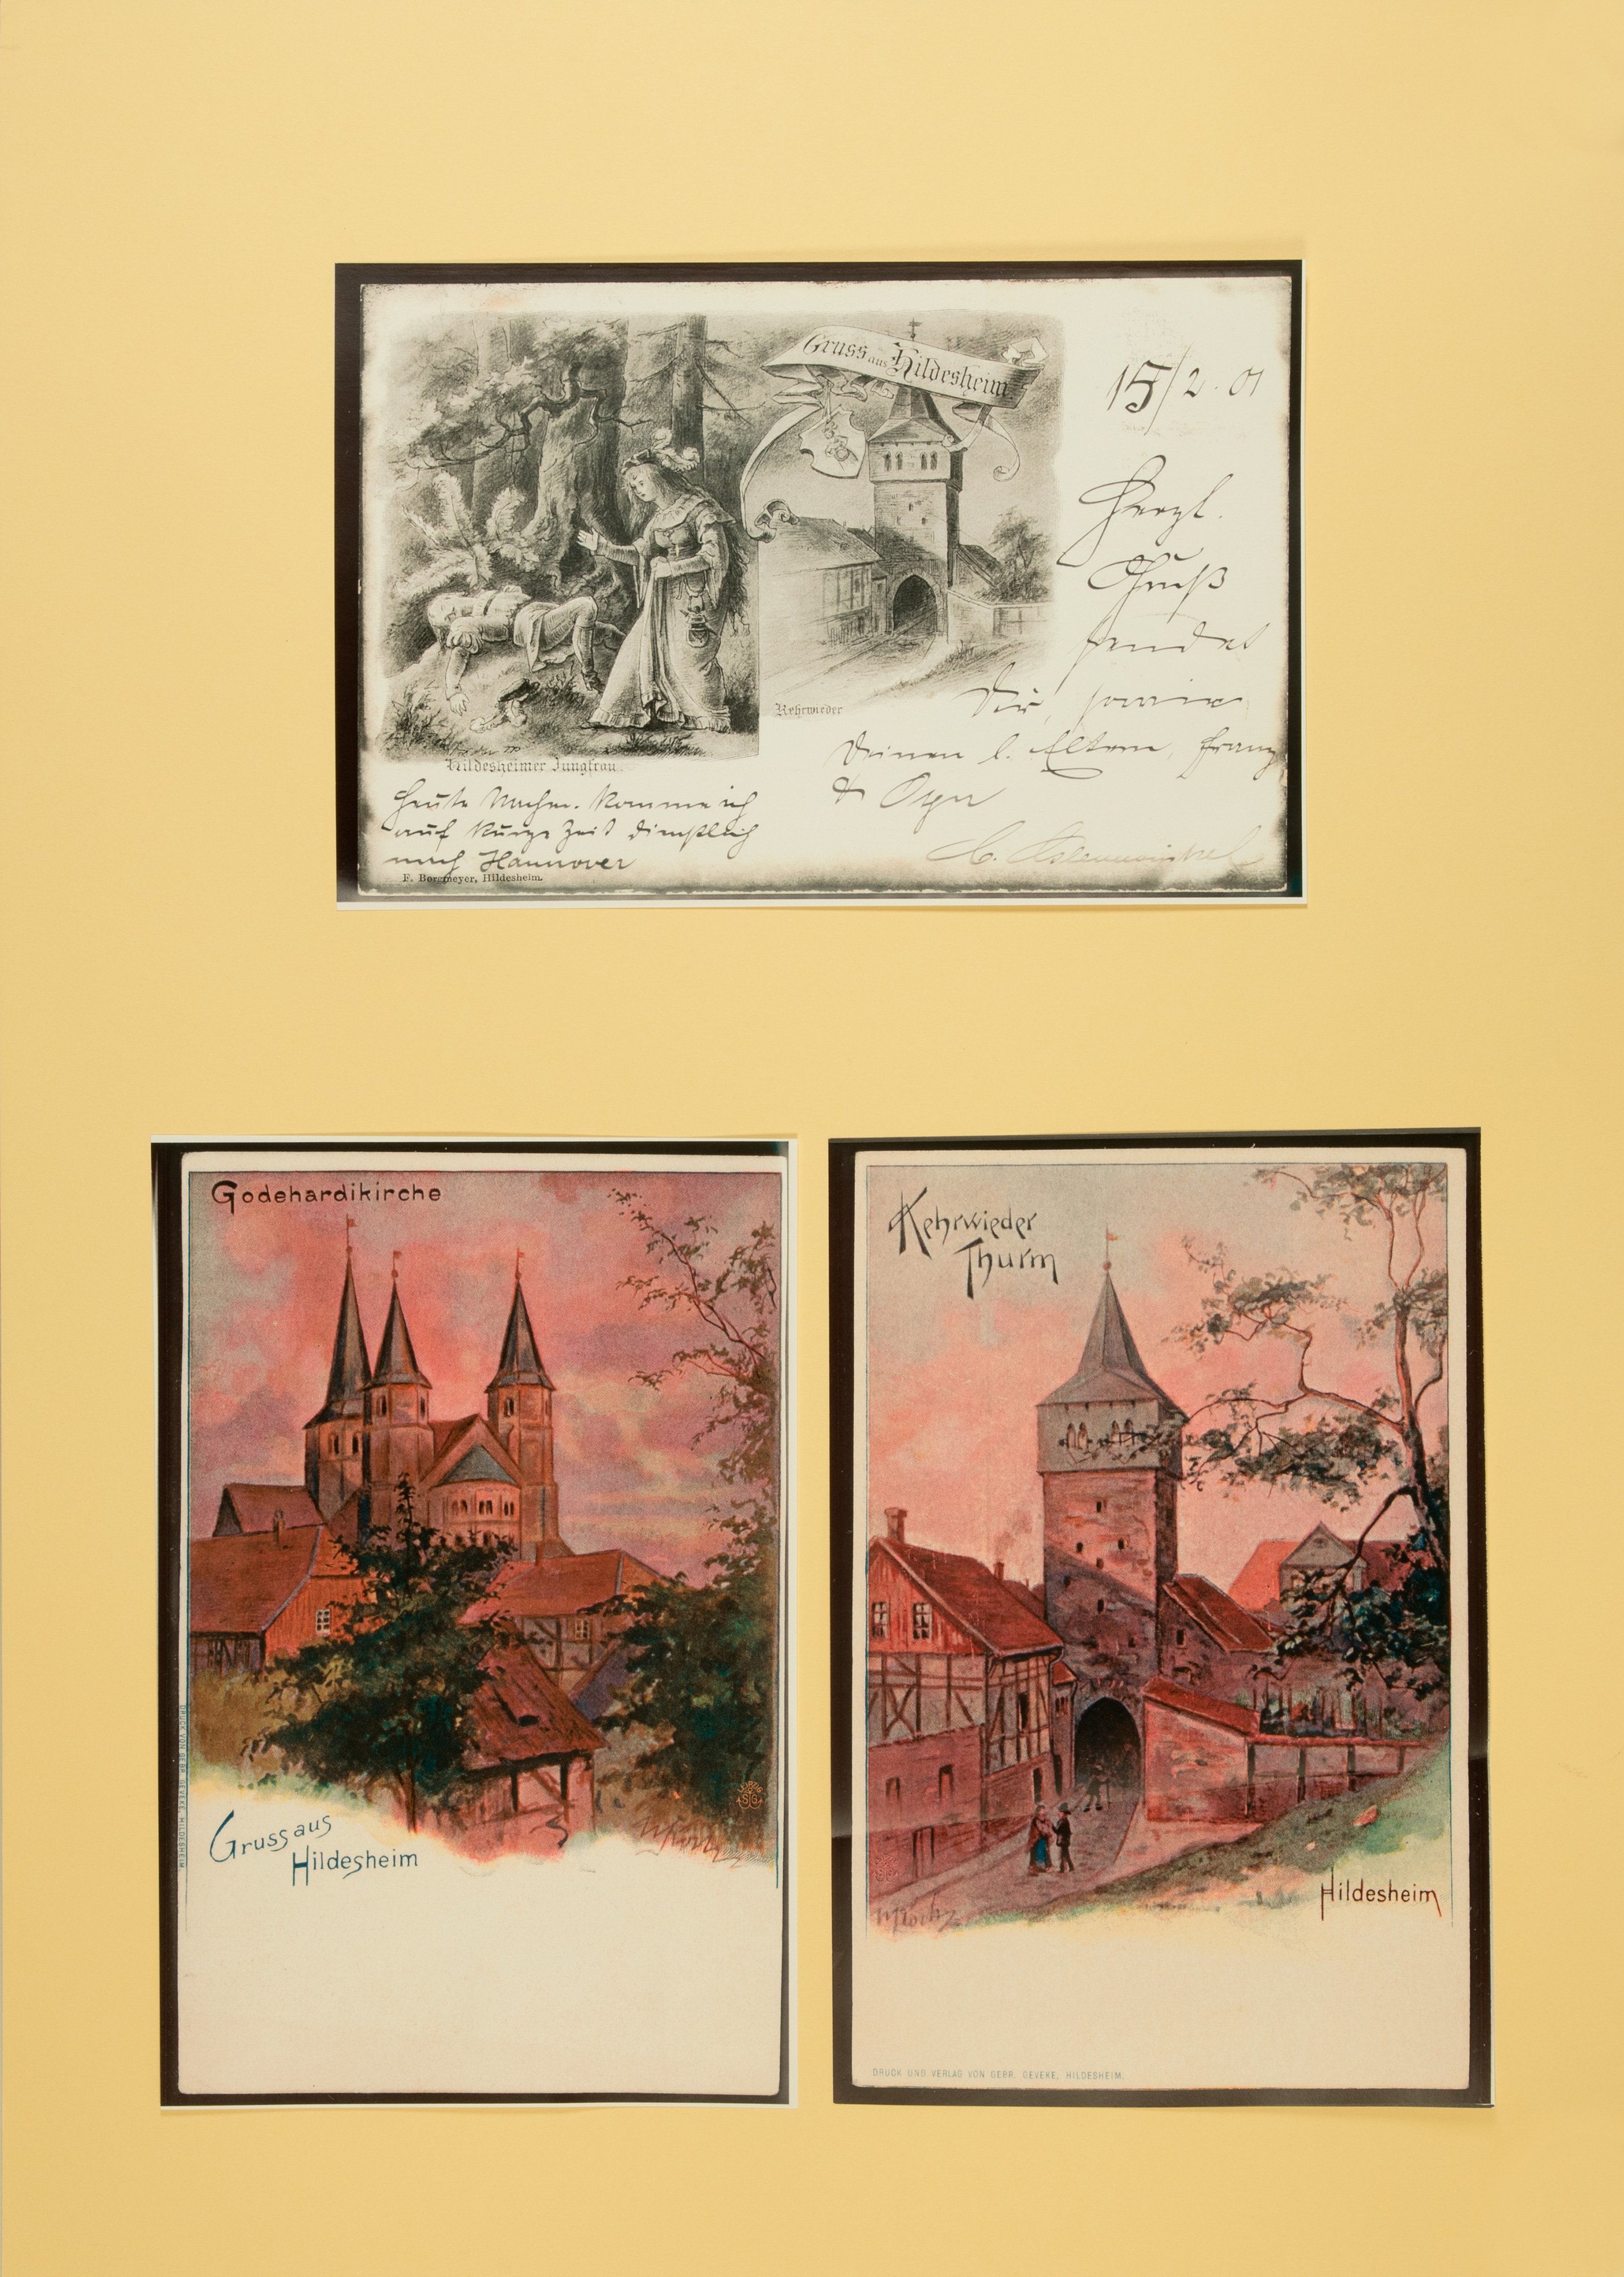 Wandbild mit Grußkarten von der Stadt Hildesheim (Stiftung Schulmuseum der Universität Hildesheim CC BY-SA)